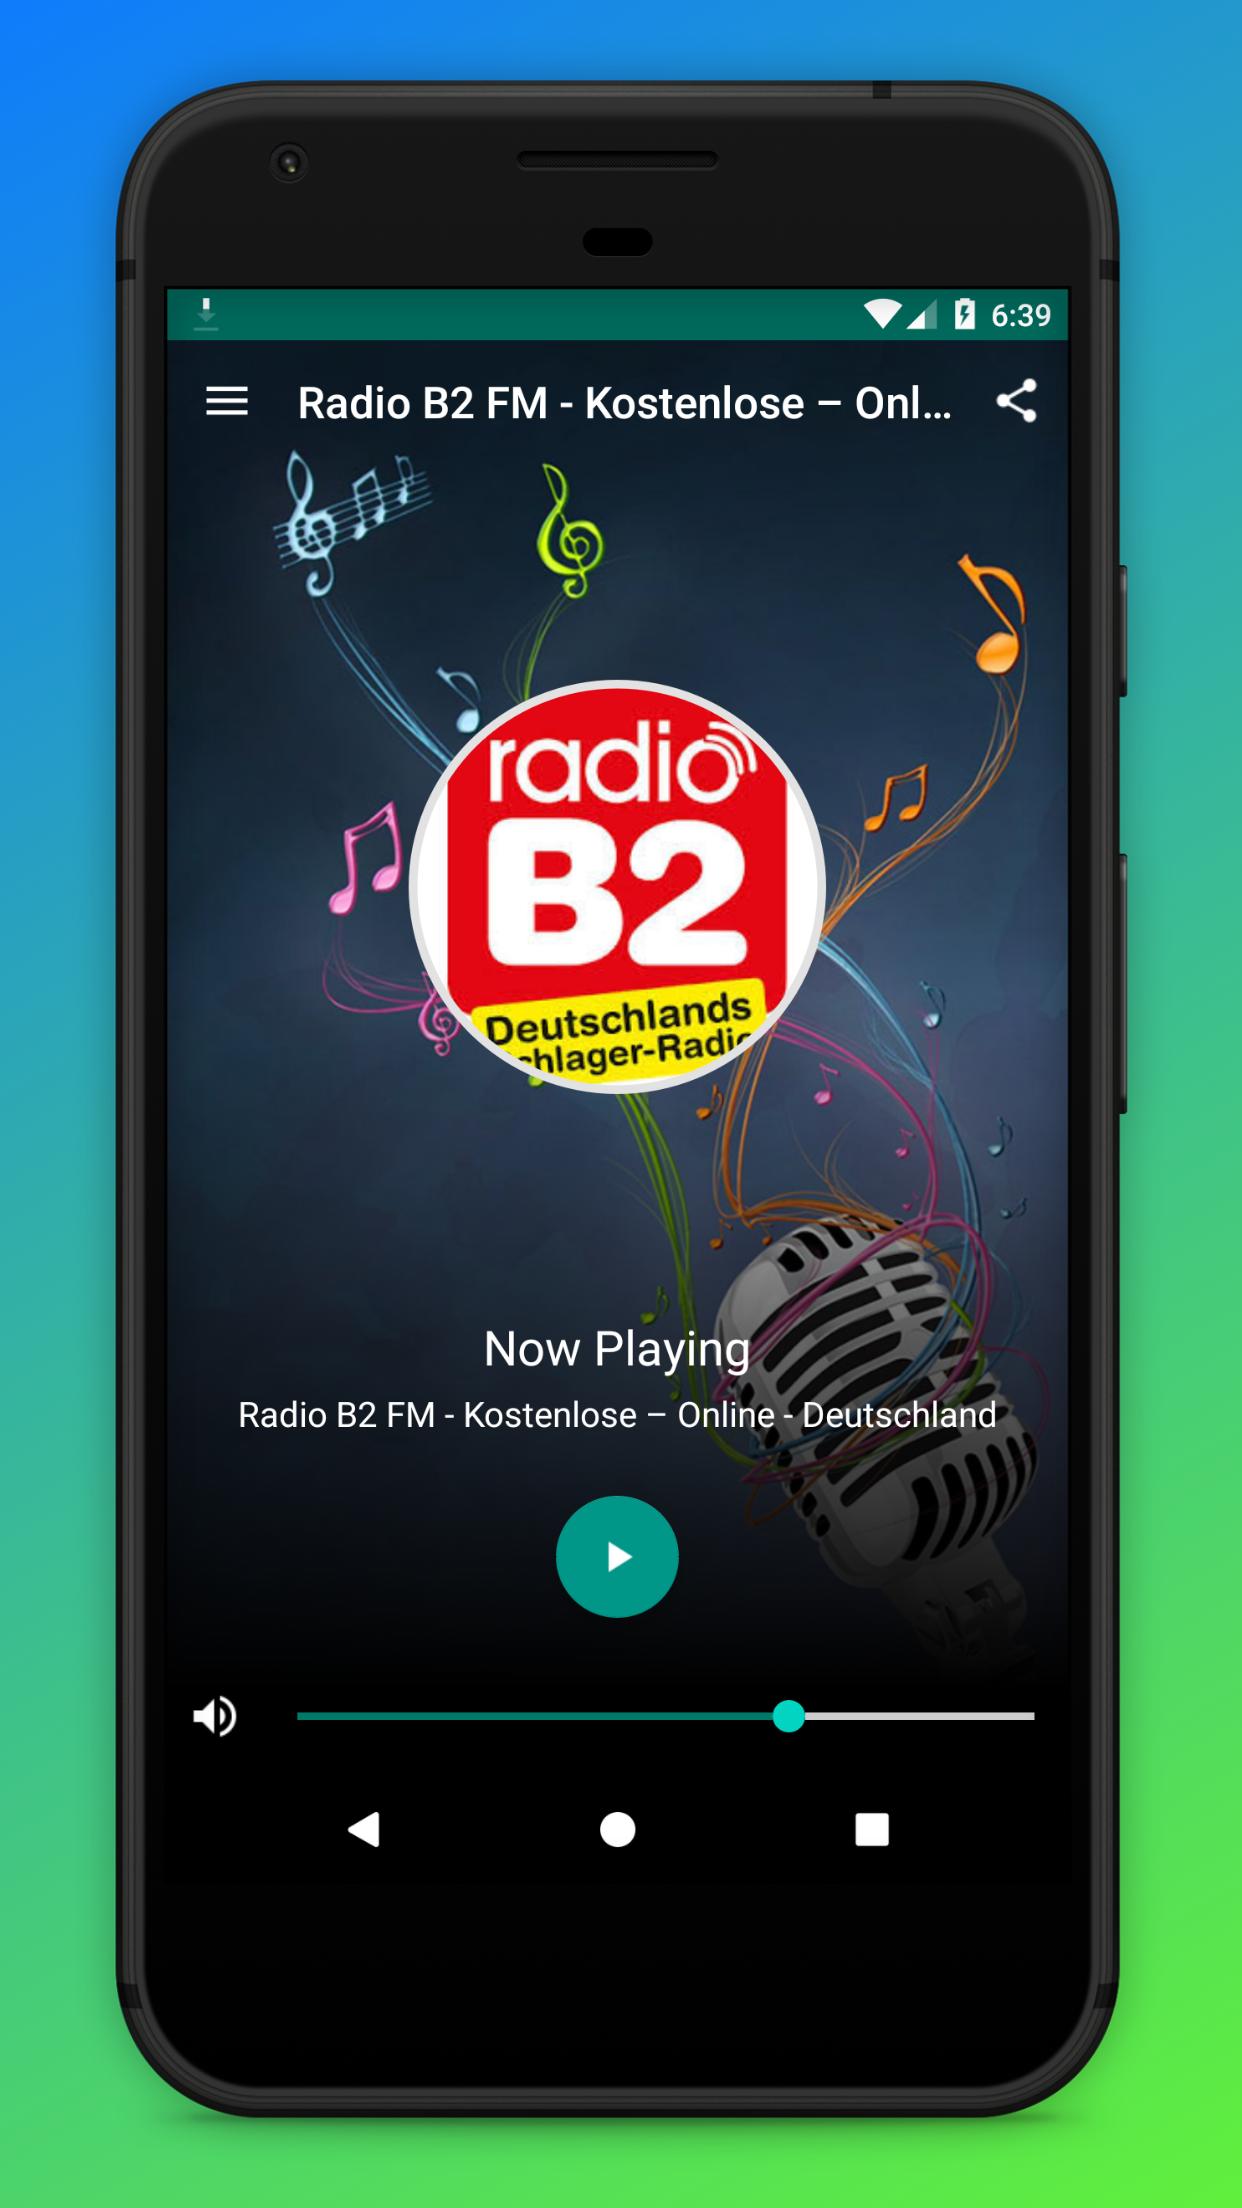 Radio B2 FM - Kostenlose – Online - Deutschland for Android - APK Download